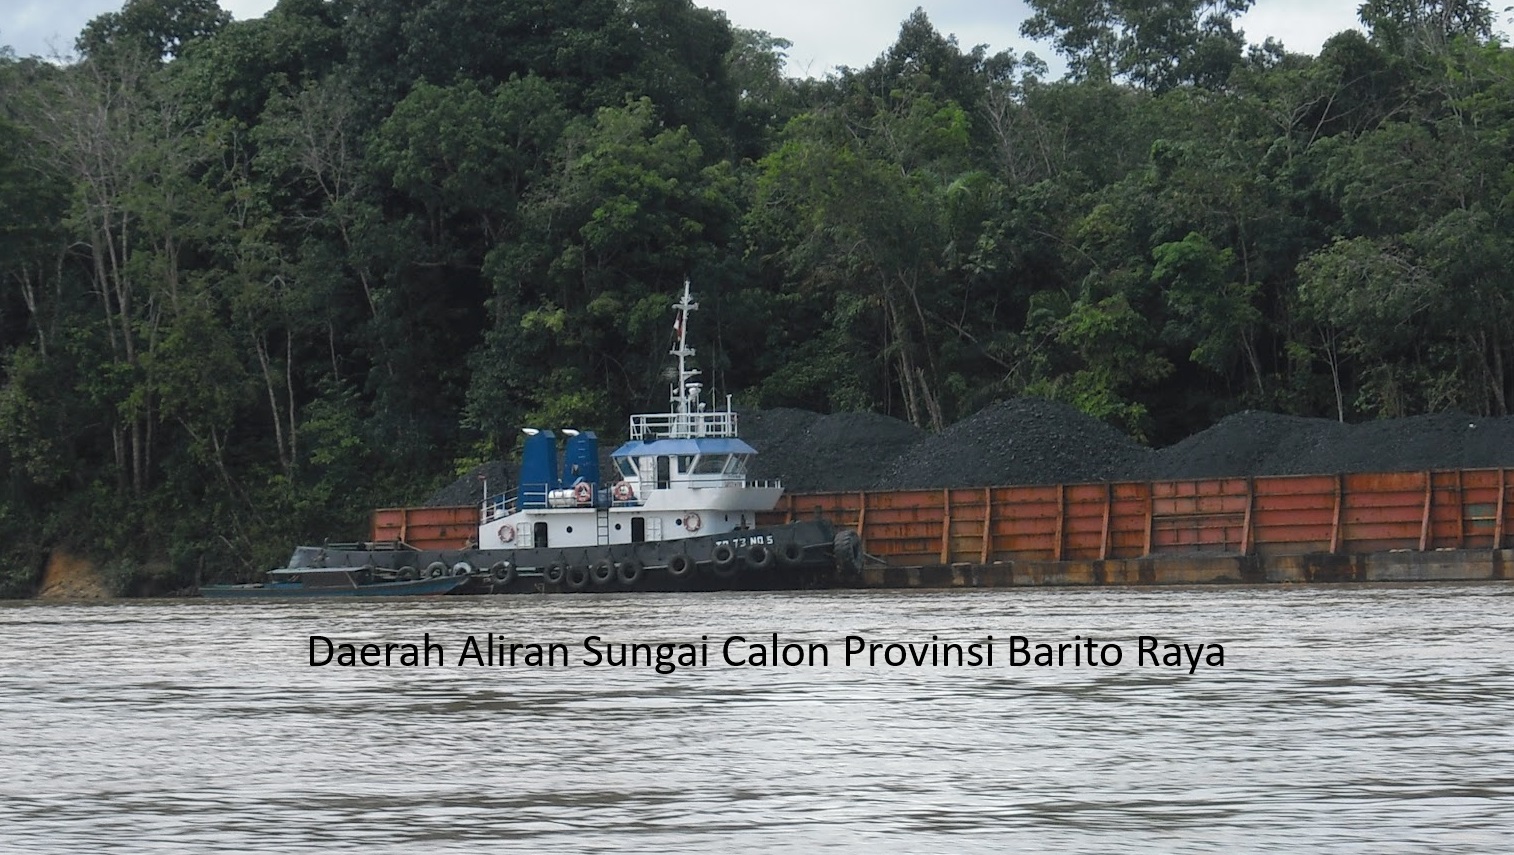 Wacana Pembentukan Provinsi Barito Raya: Pemekaran Kalimantan Tengah dan Selatan untuk Pemerataan Pembangunan